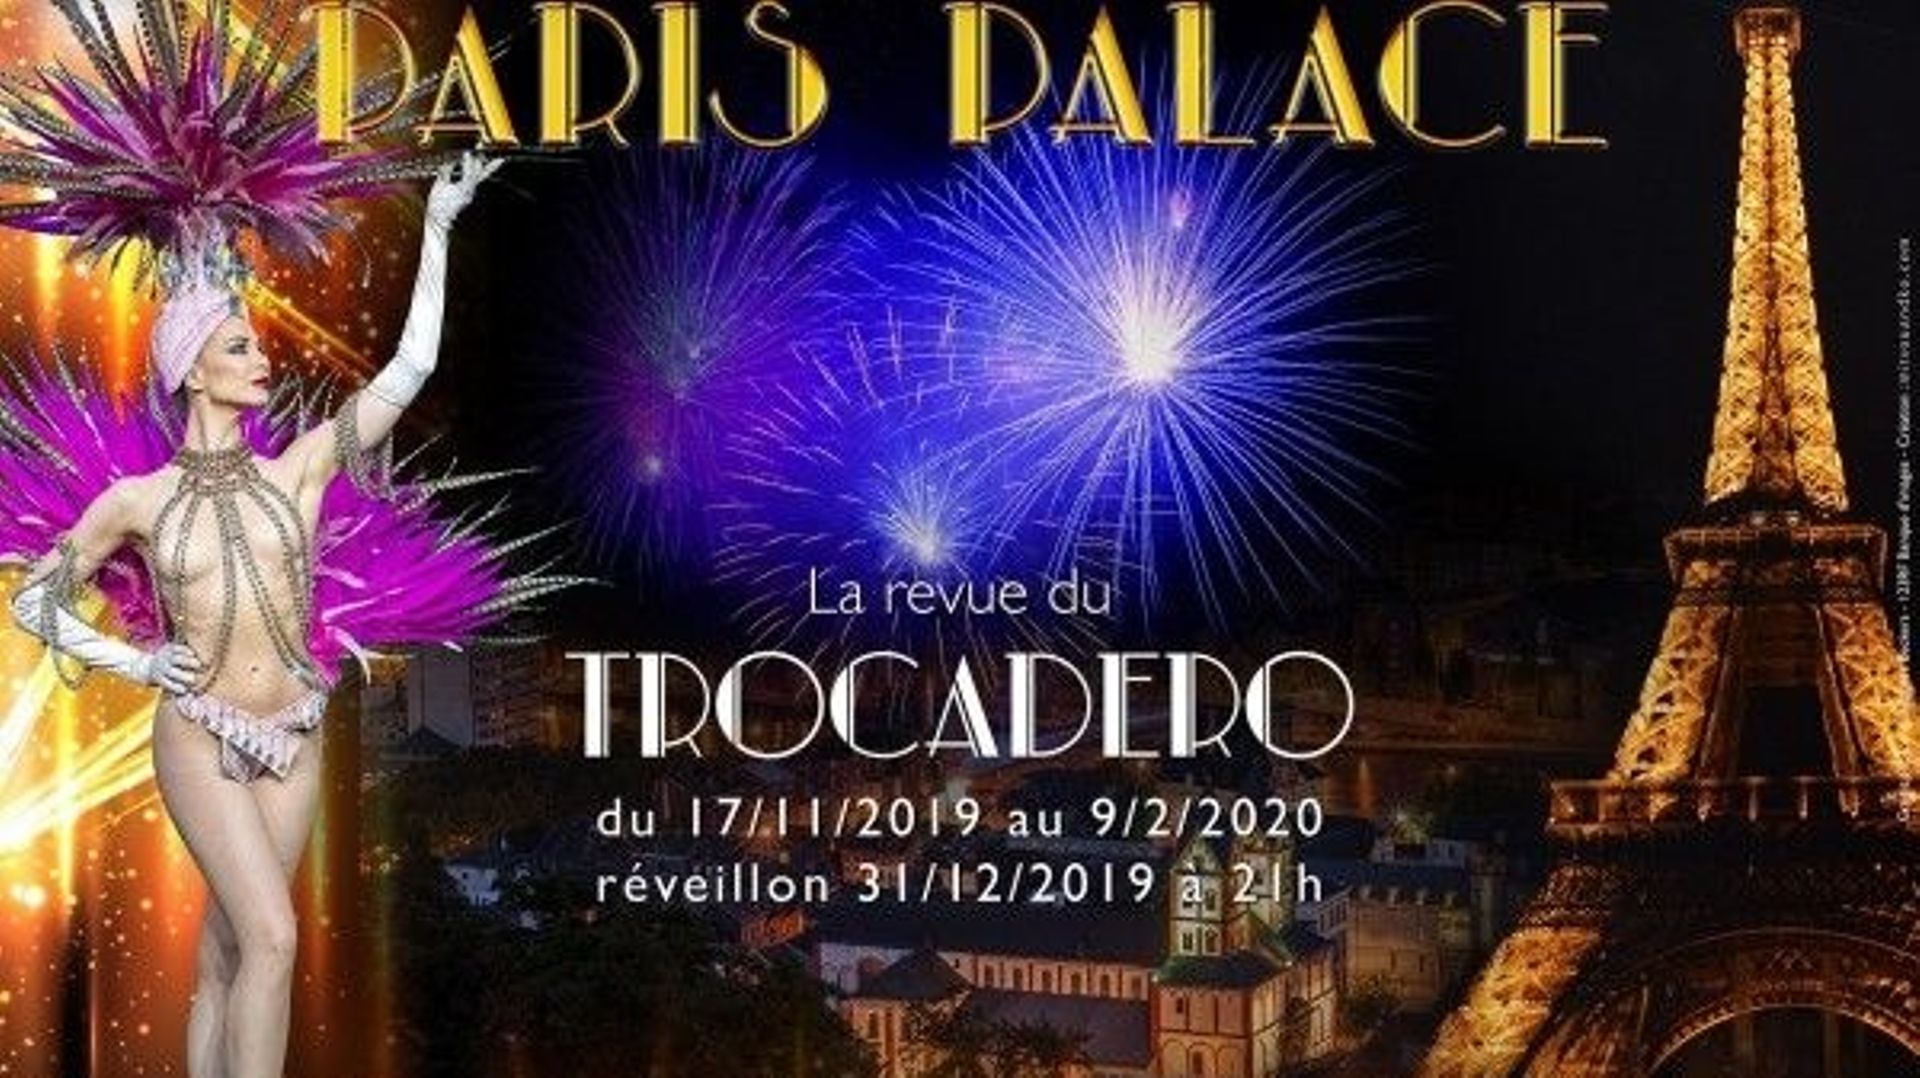 Concours : Gagnez des places pour le spectacle " Paris Palace " au Trocadéro le 18 janvier à 20 heures !